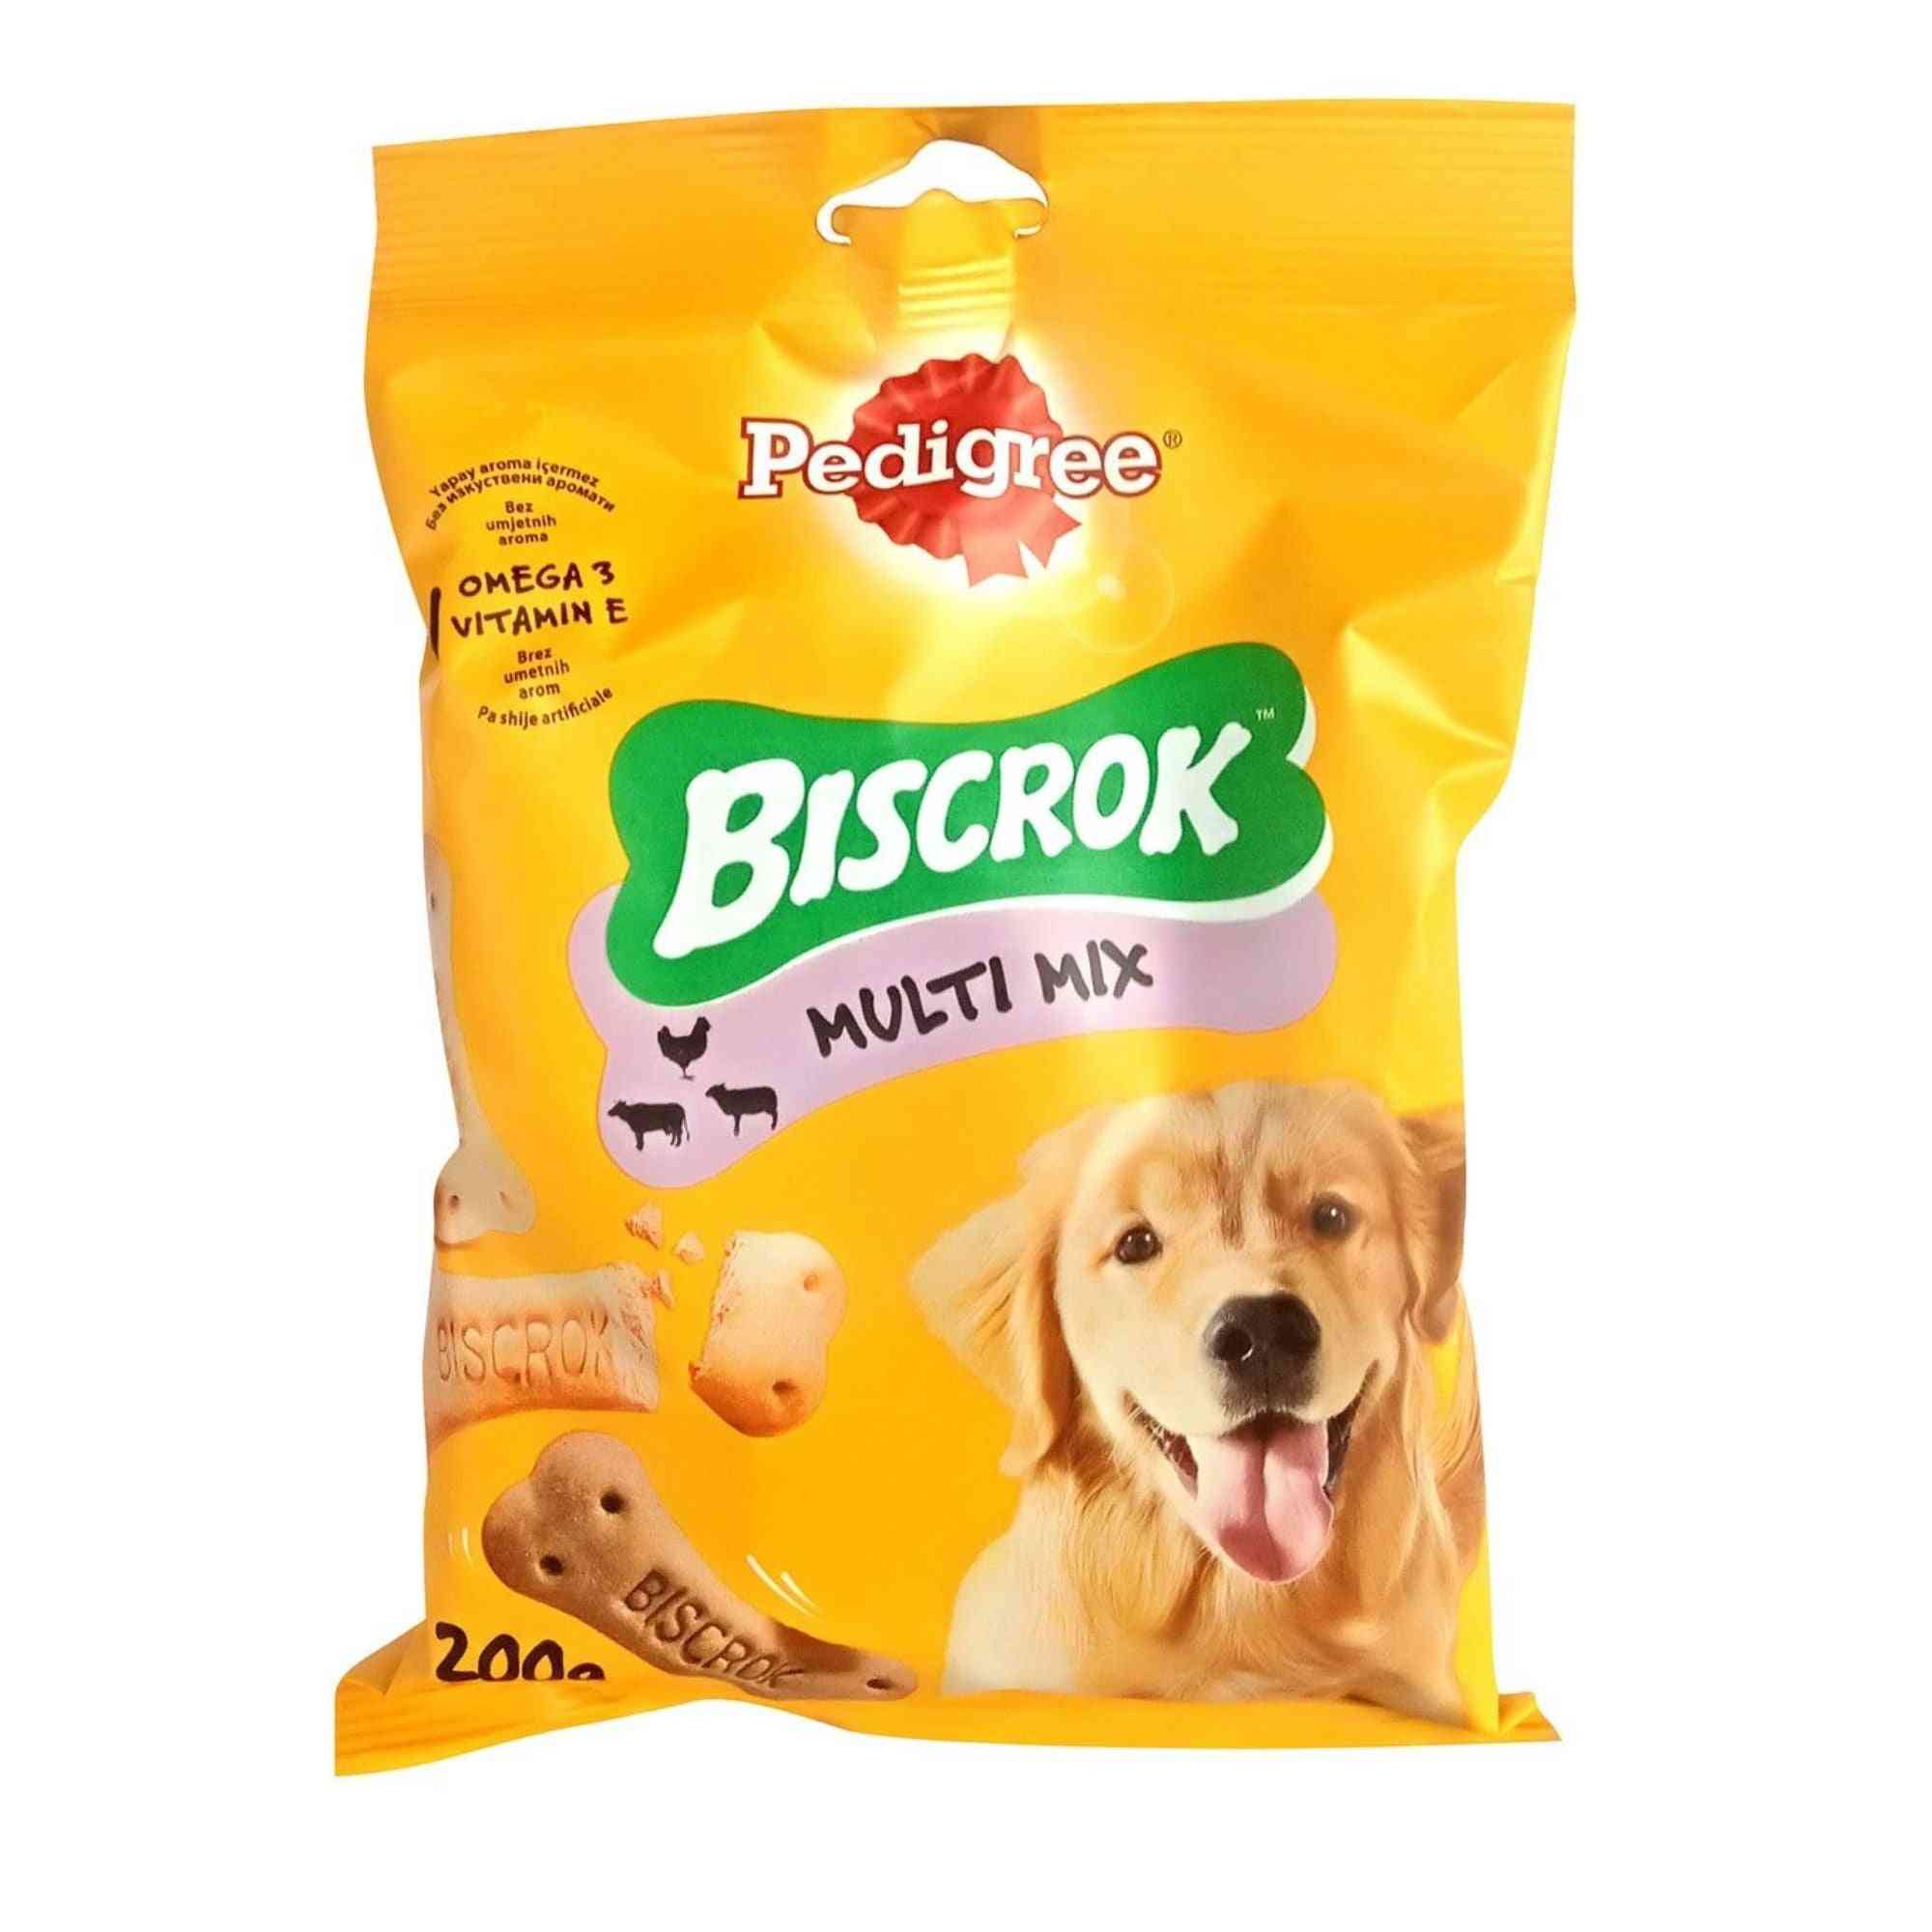 Biscrok multi mix pro psy s omega 3, vitamínem e, minerály a vápníkem.